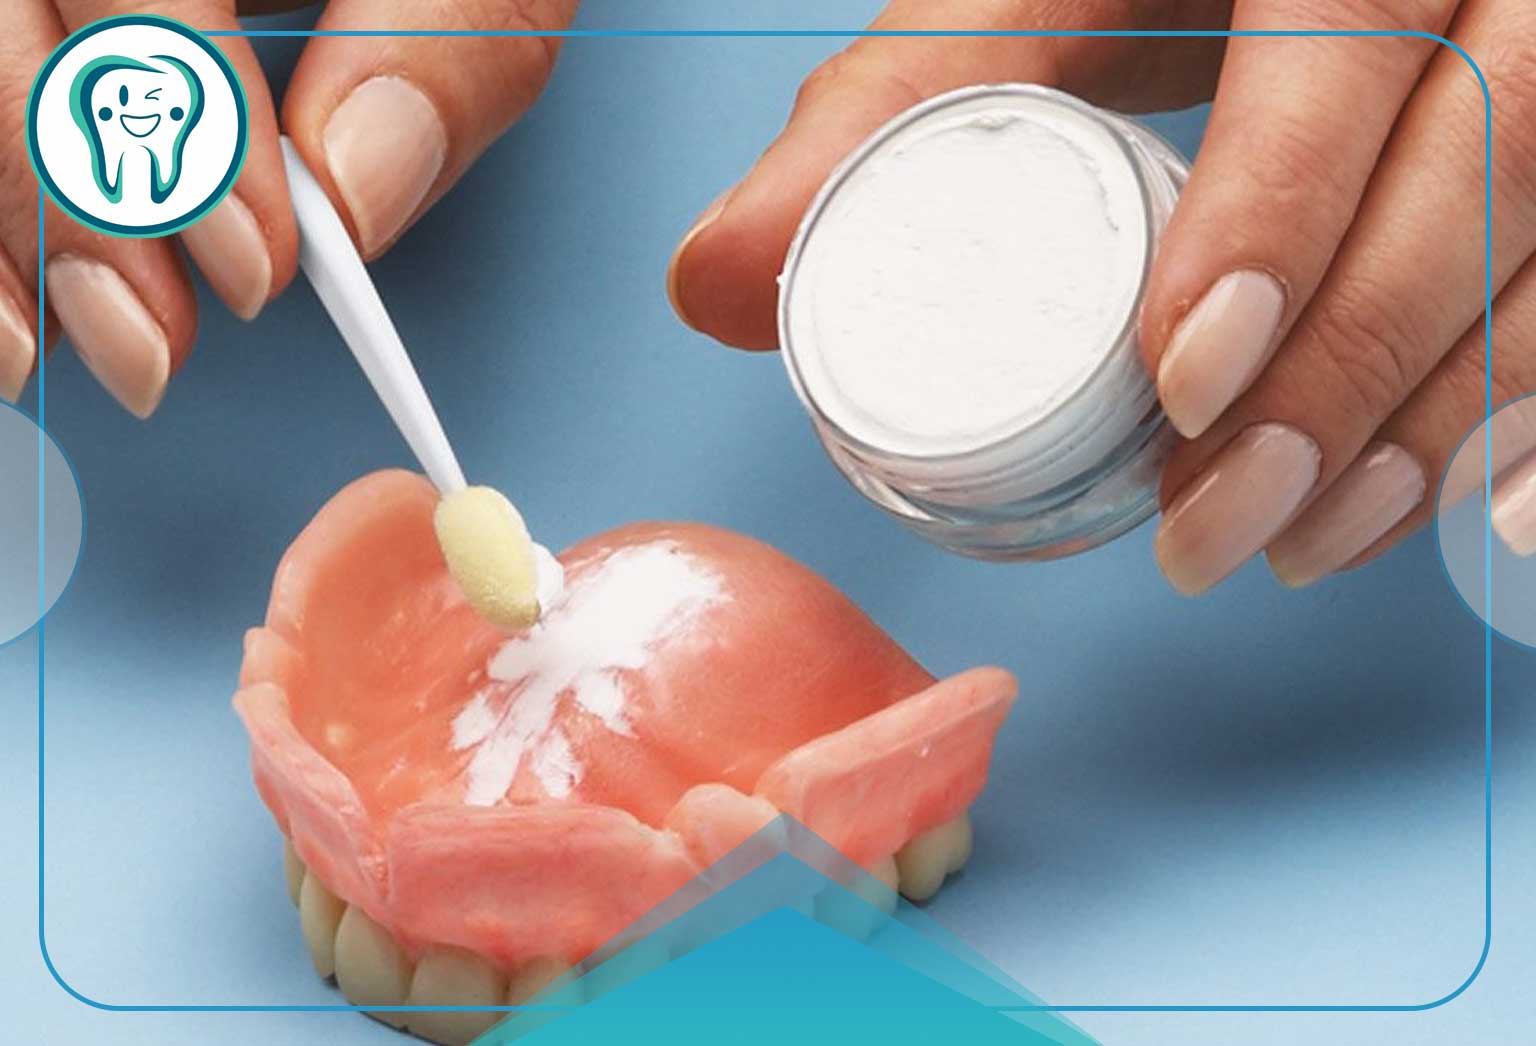  بهترین راه برای درمان درد دندان مصنوعی